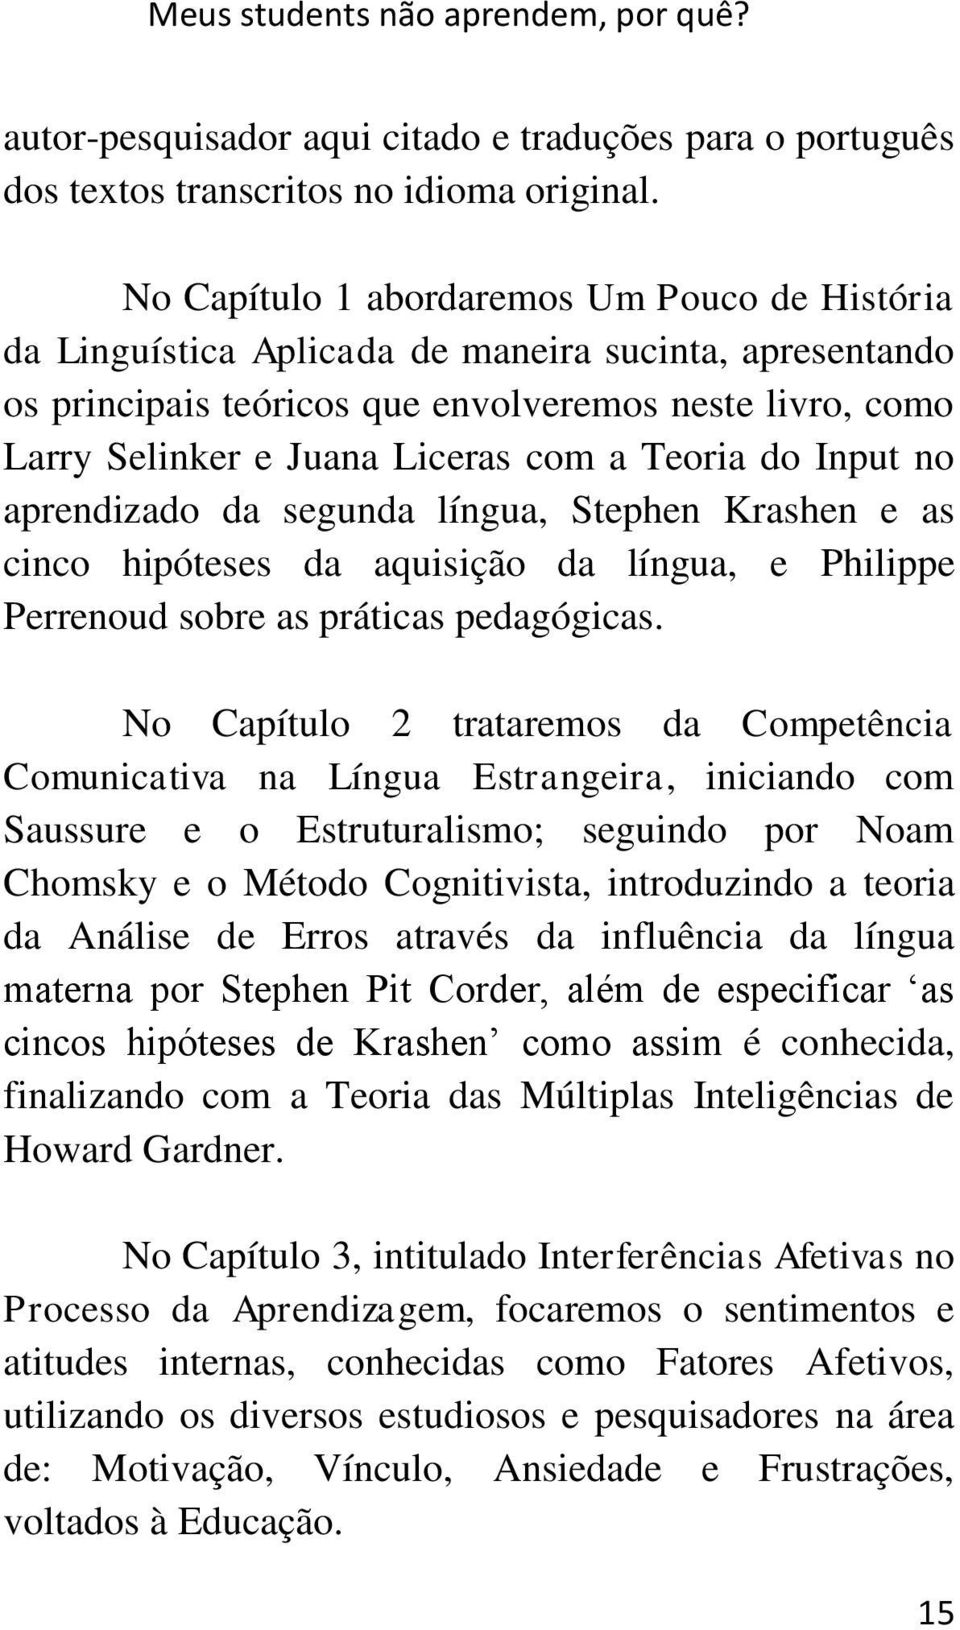 Teoria do Input no aprendizado da segunda língua, Stephen Krashen e as cinco hipóteses da aquisição da língua, e Philippe Perrenoud sobre as práticas pedagógicas.